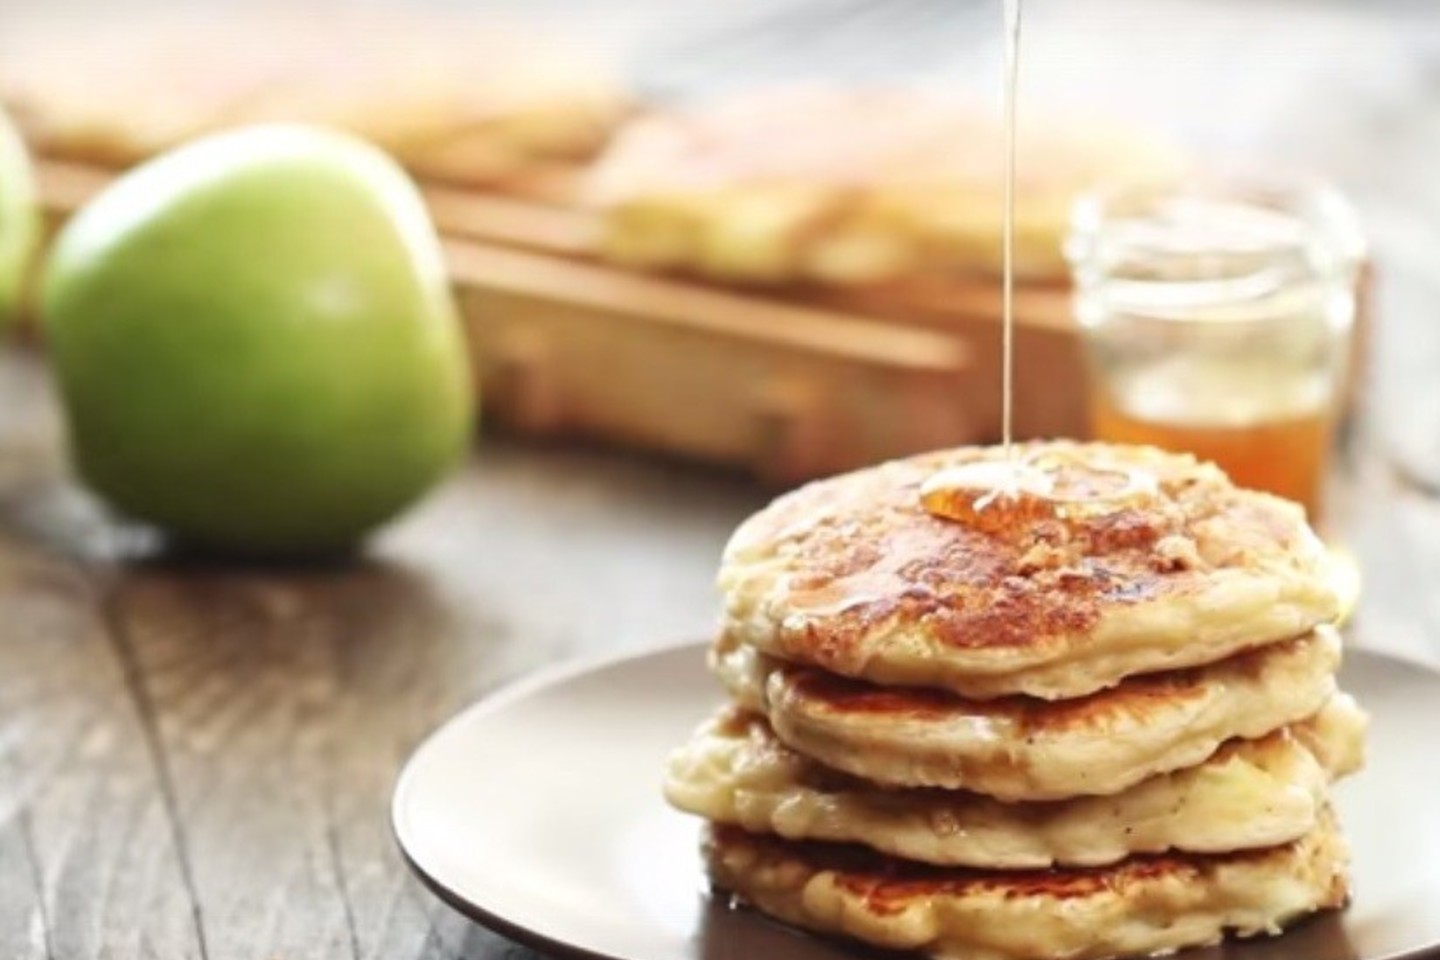 Savaitgalio blynai su obuoliais ir traškia plutele.<br>Stopkadras iš „Home Cooking Adventure“/“Youtube“.